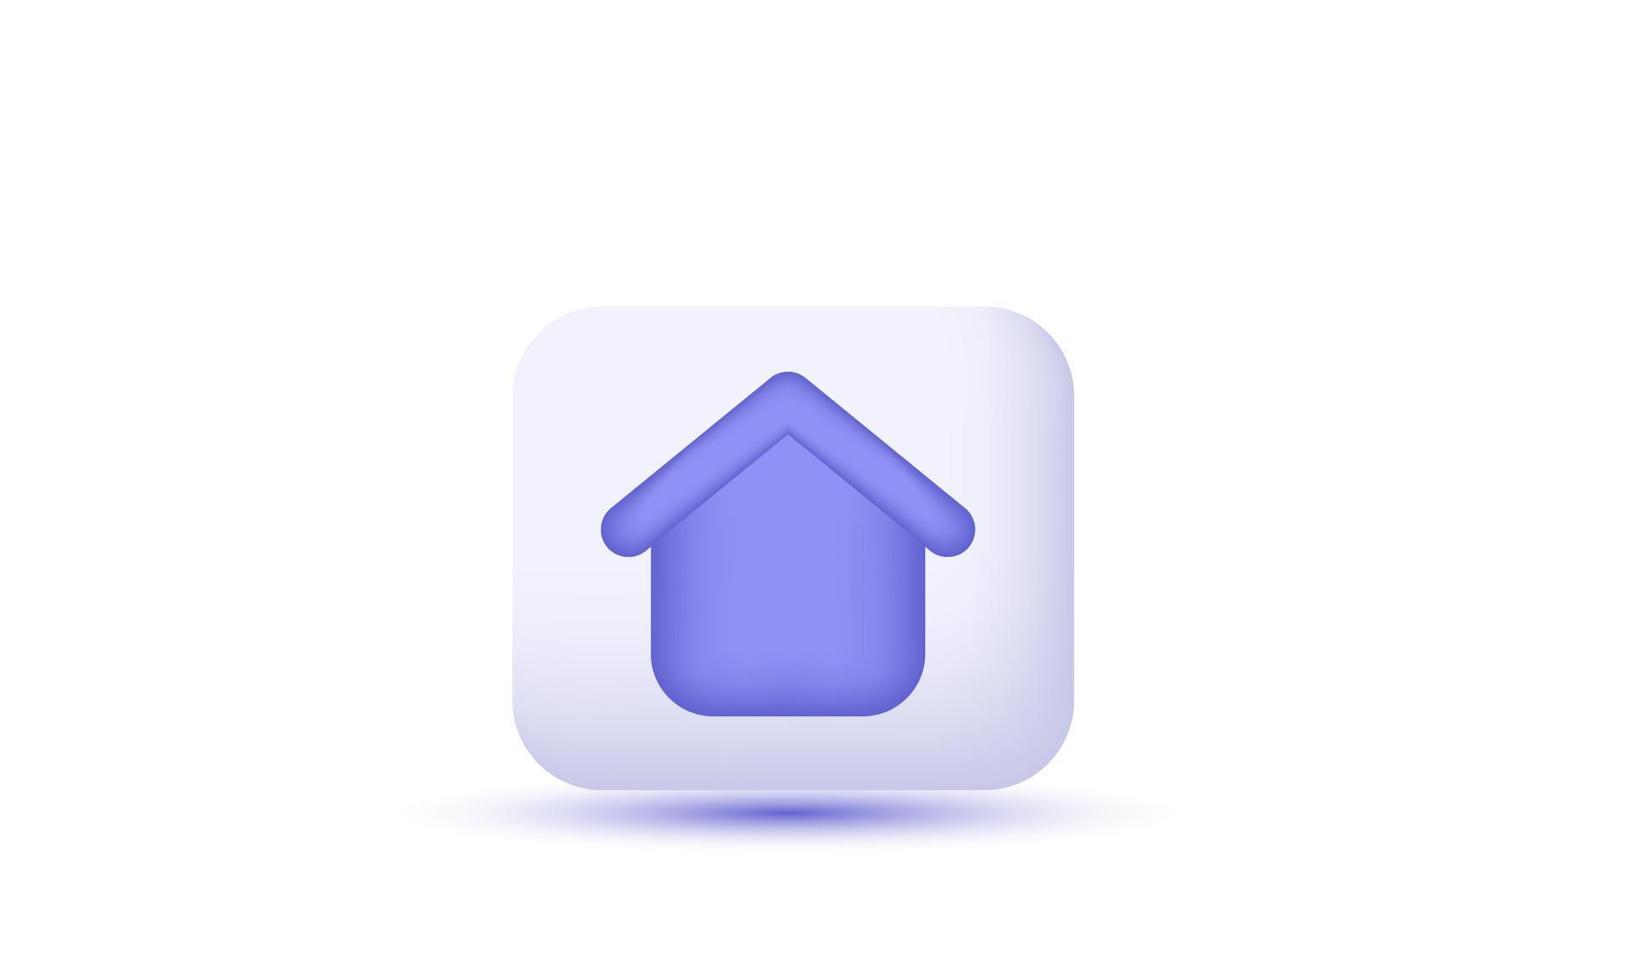 illustration ikon minimal housen symbol verklig egendom inteckning vektor